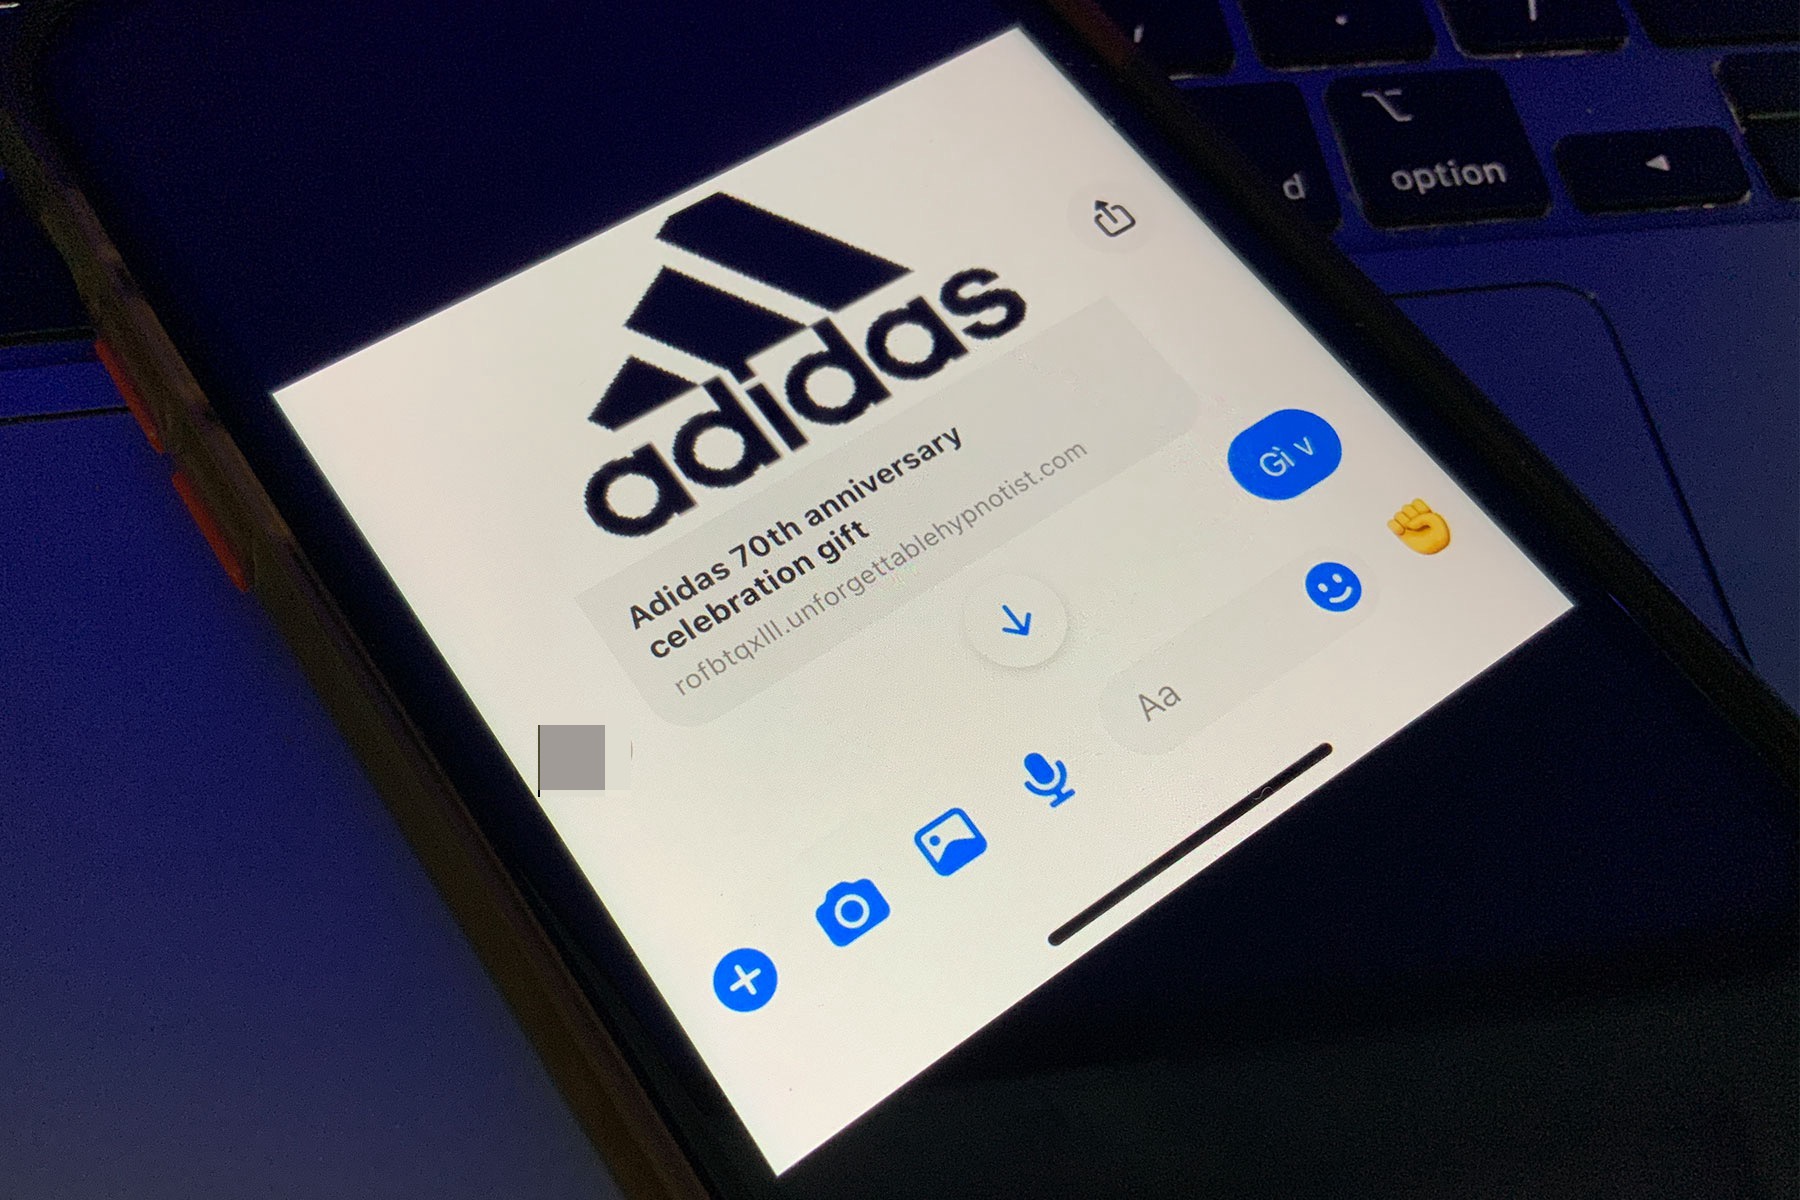 Nhiều người nhận được tin nhắn giả mạo Adidas trên Facebook - Ảnh 1.